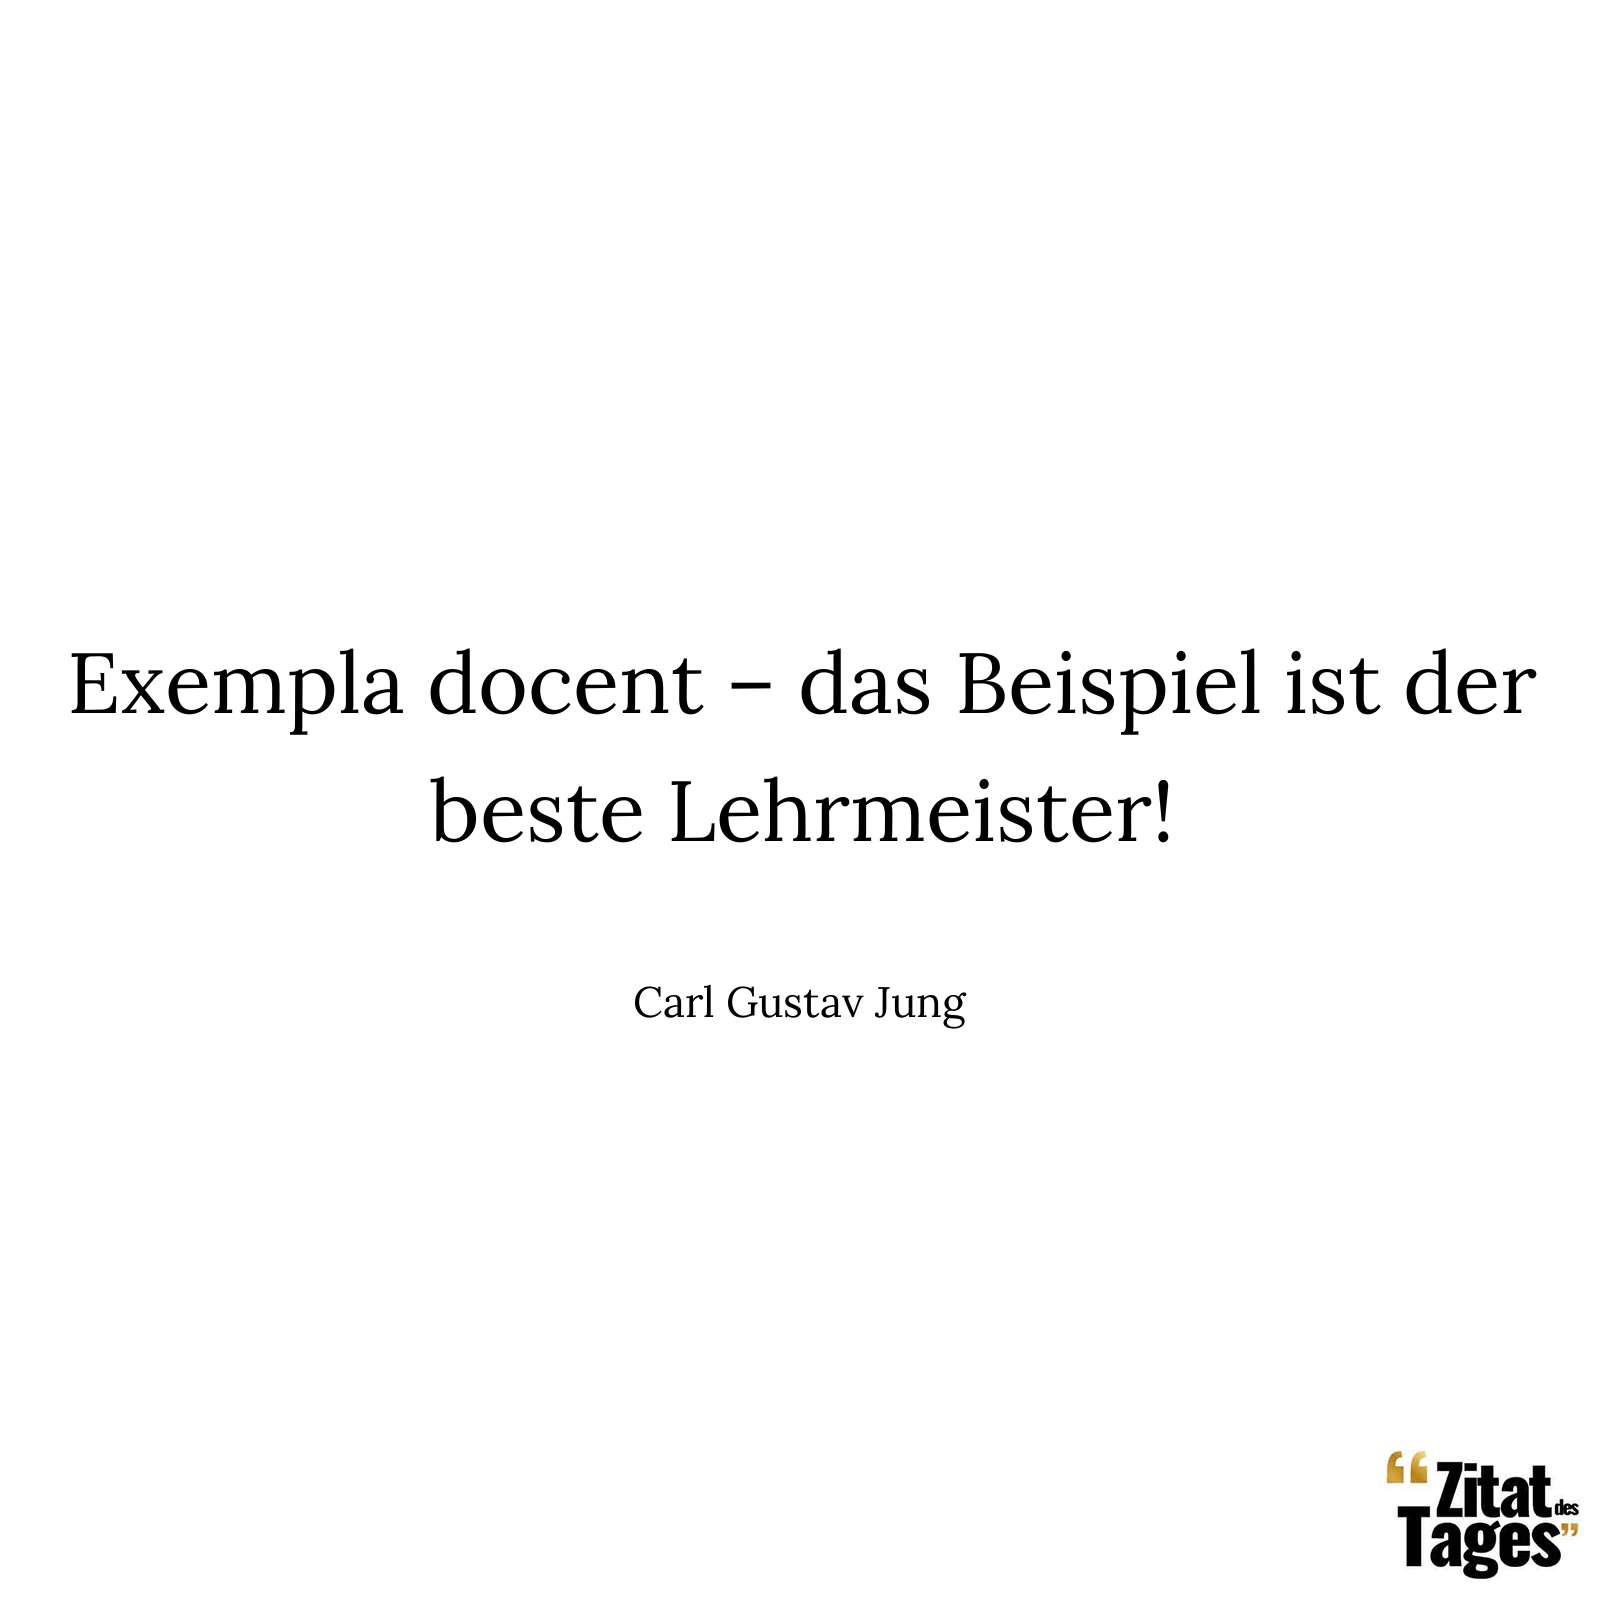 Exempla docent – das Beispiel ist der beste Lehrmeister! - Carl Gustav Jung